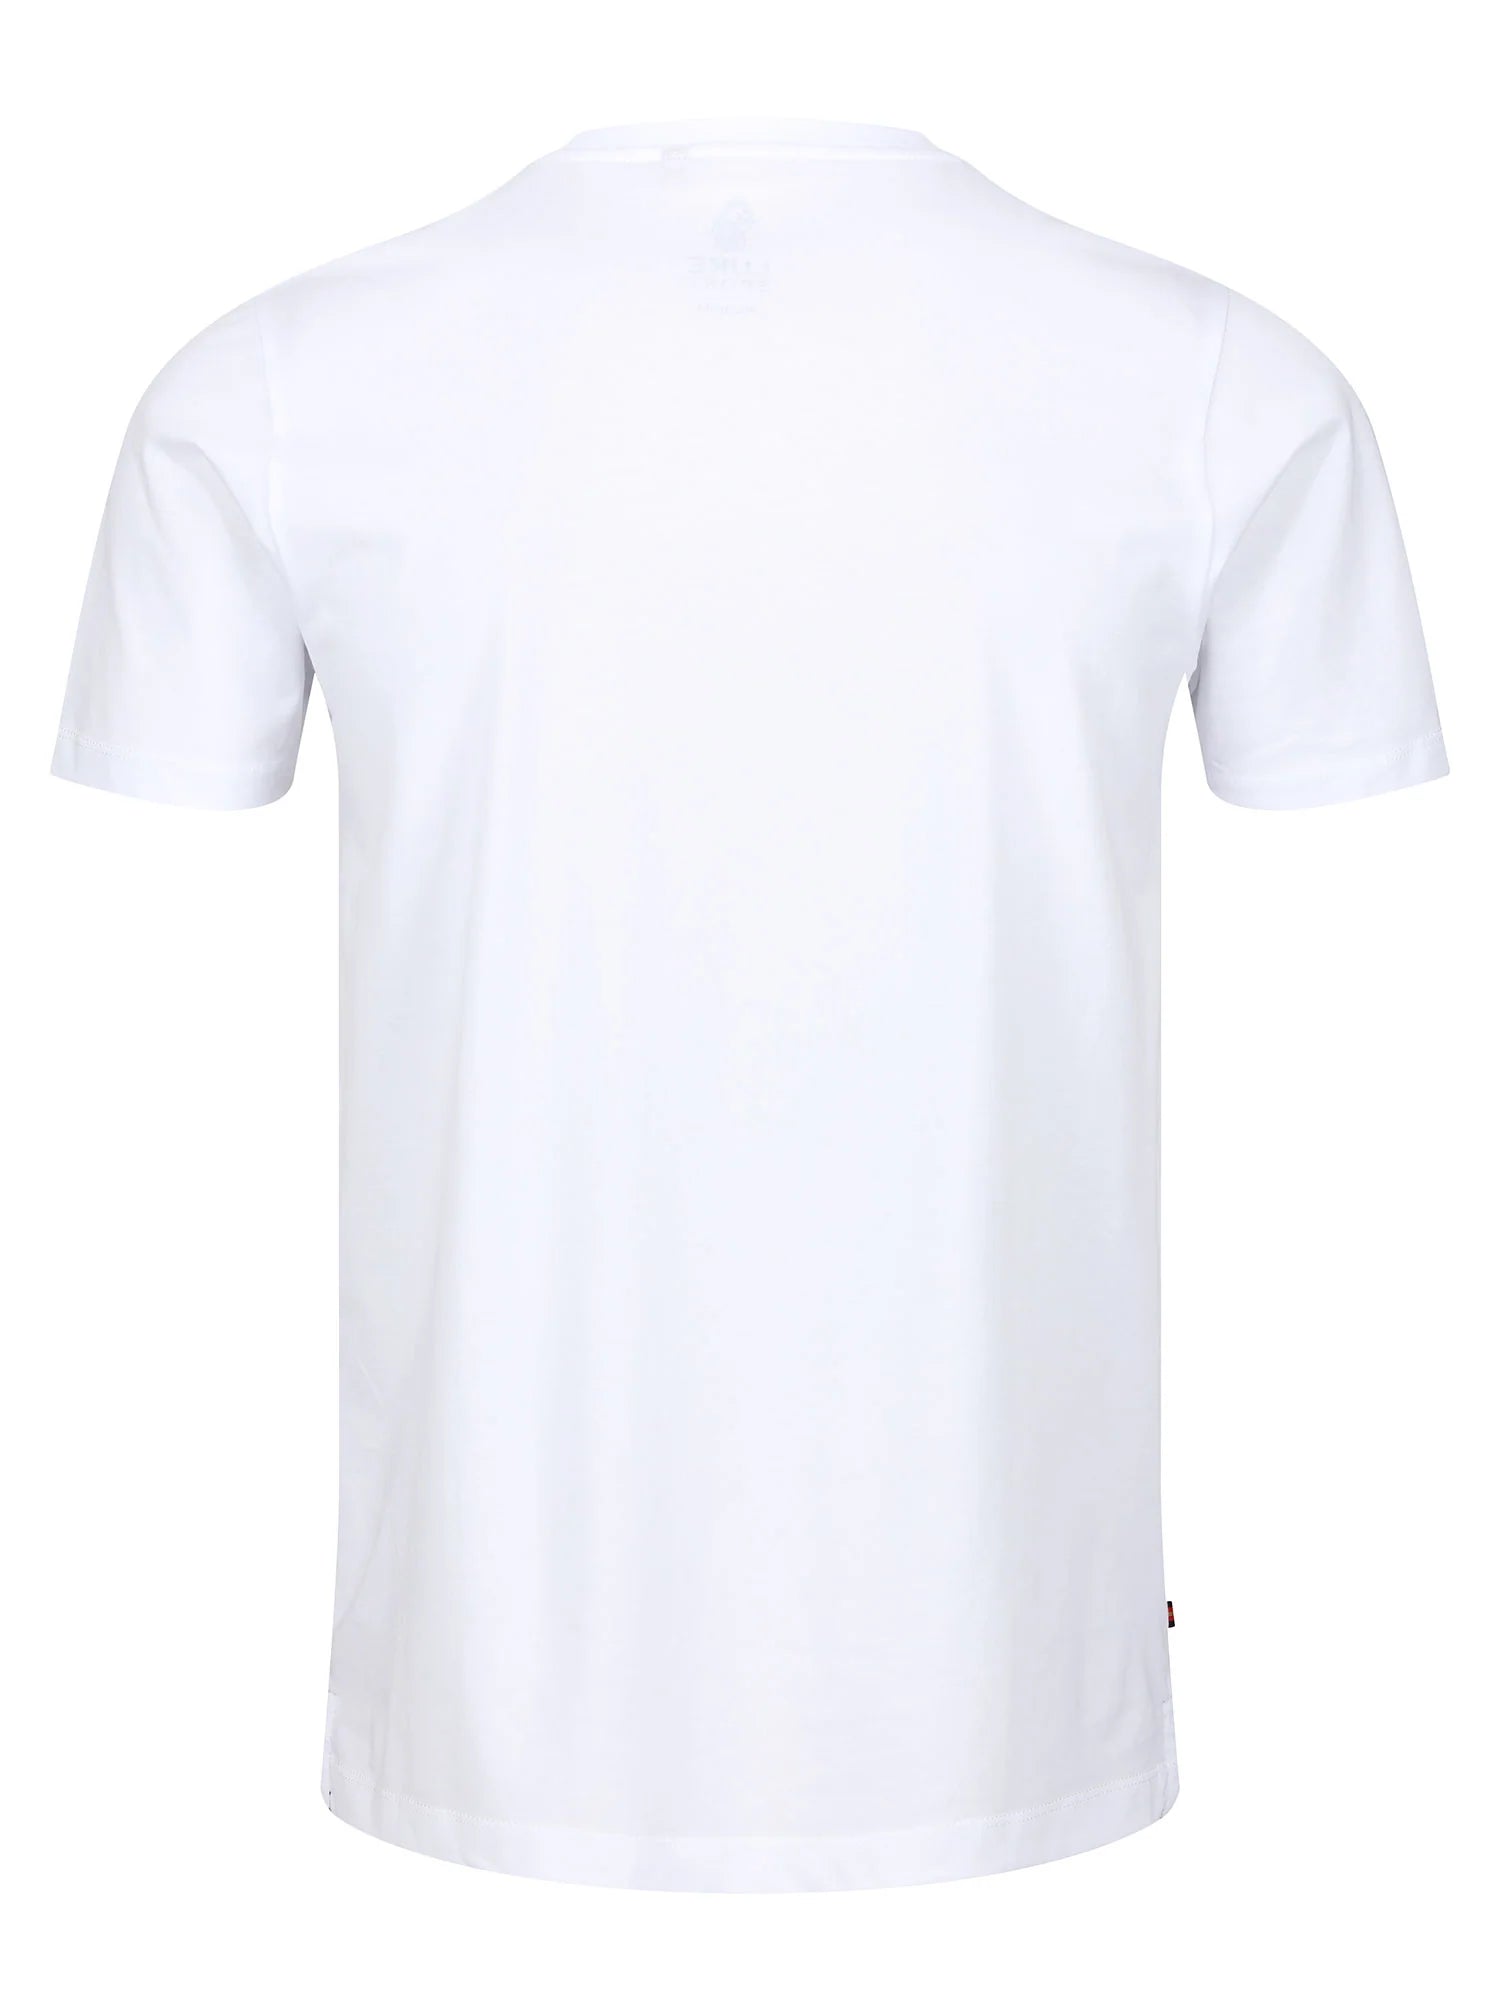 Luke Kane T-Shirt White